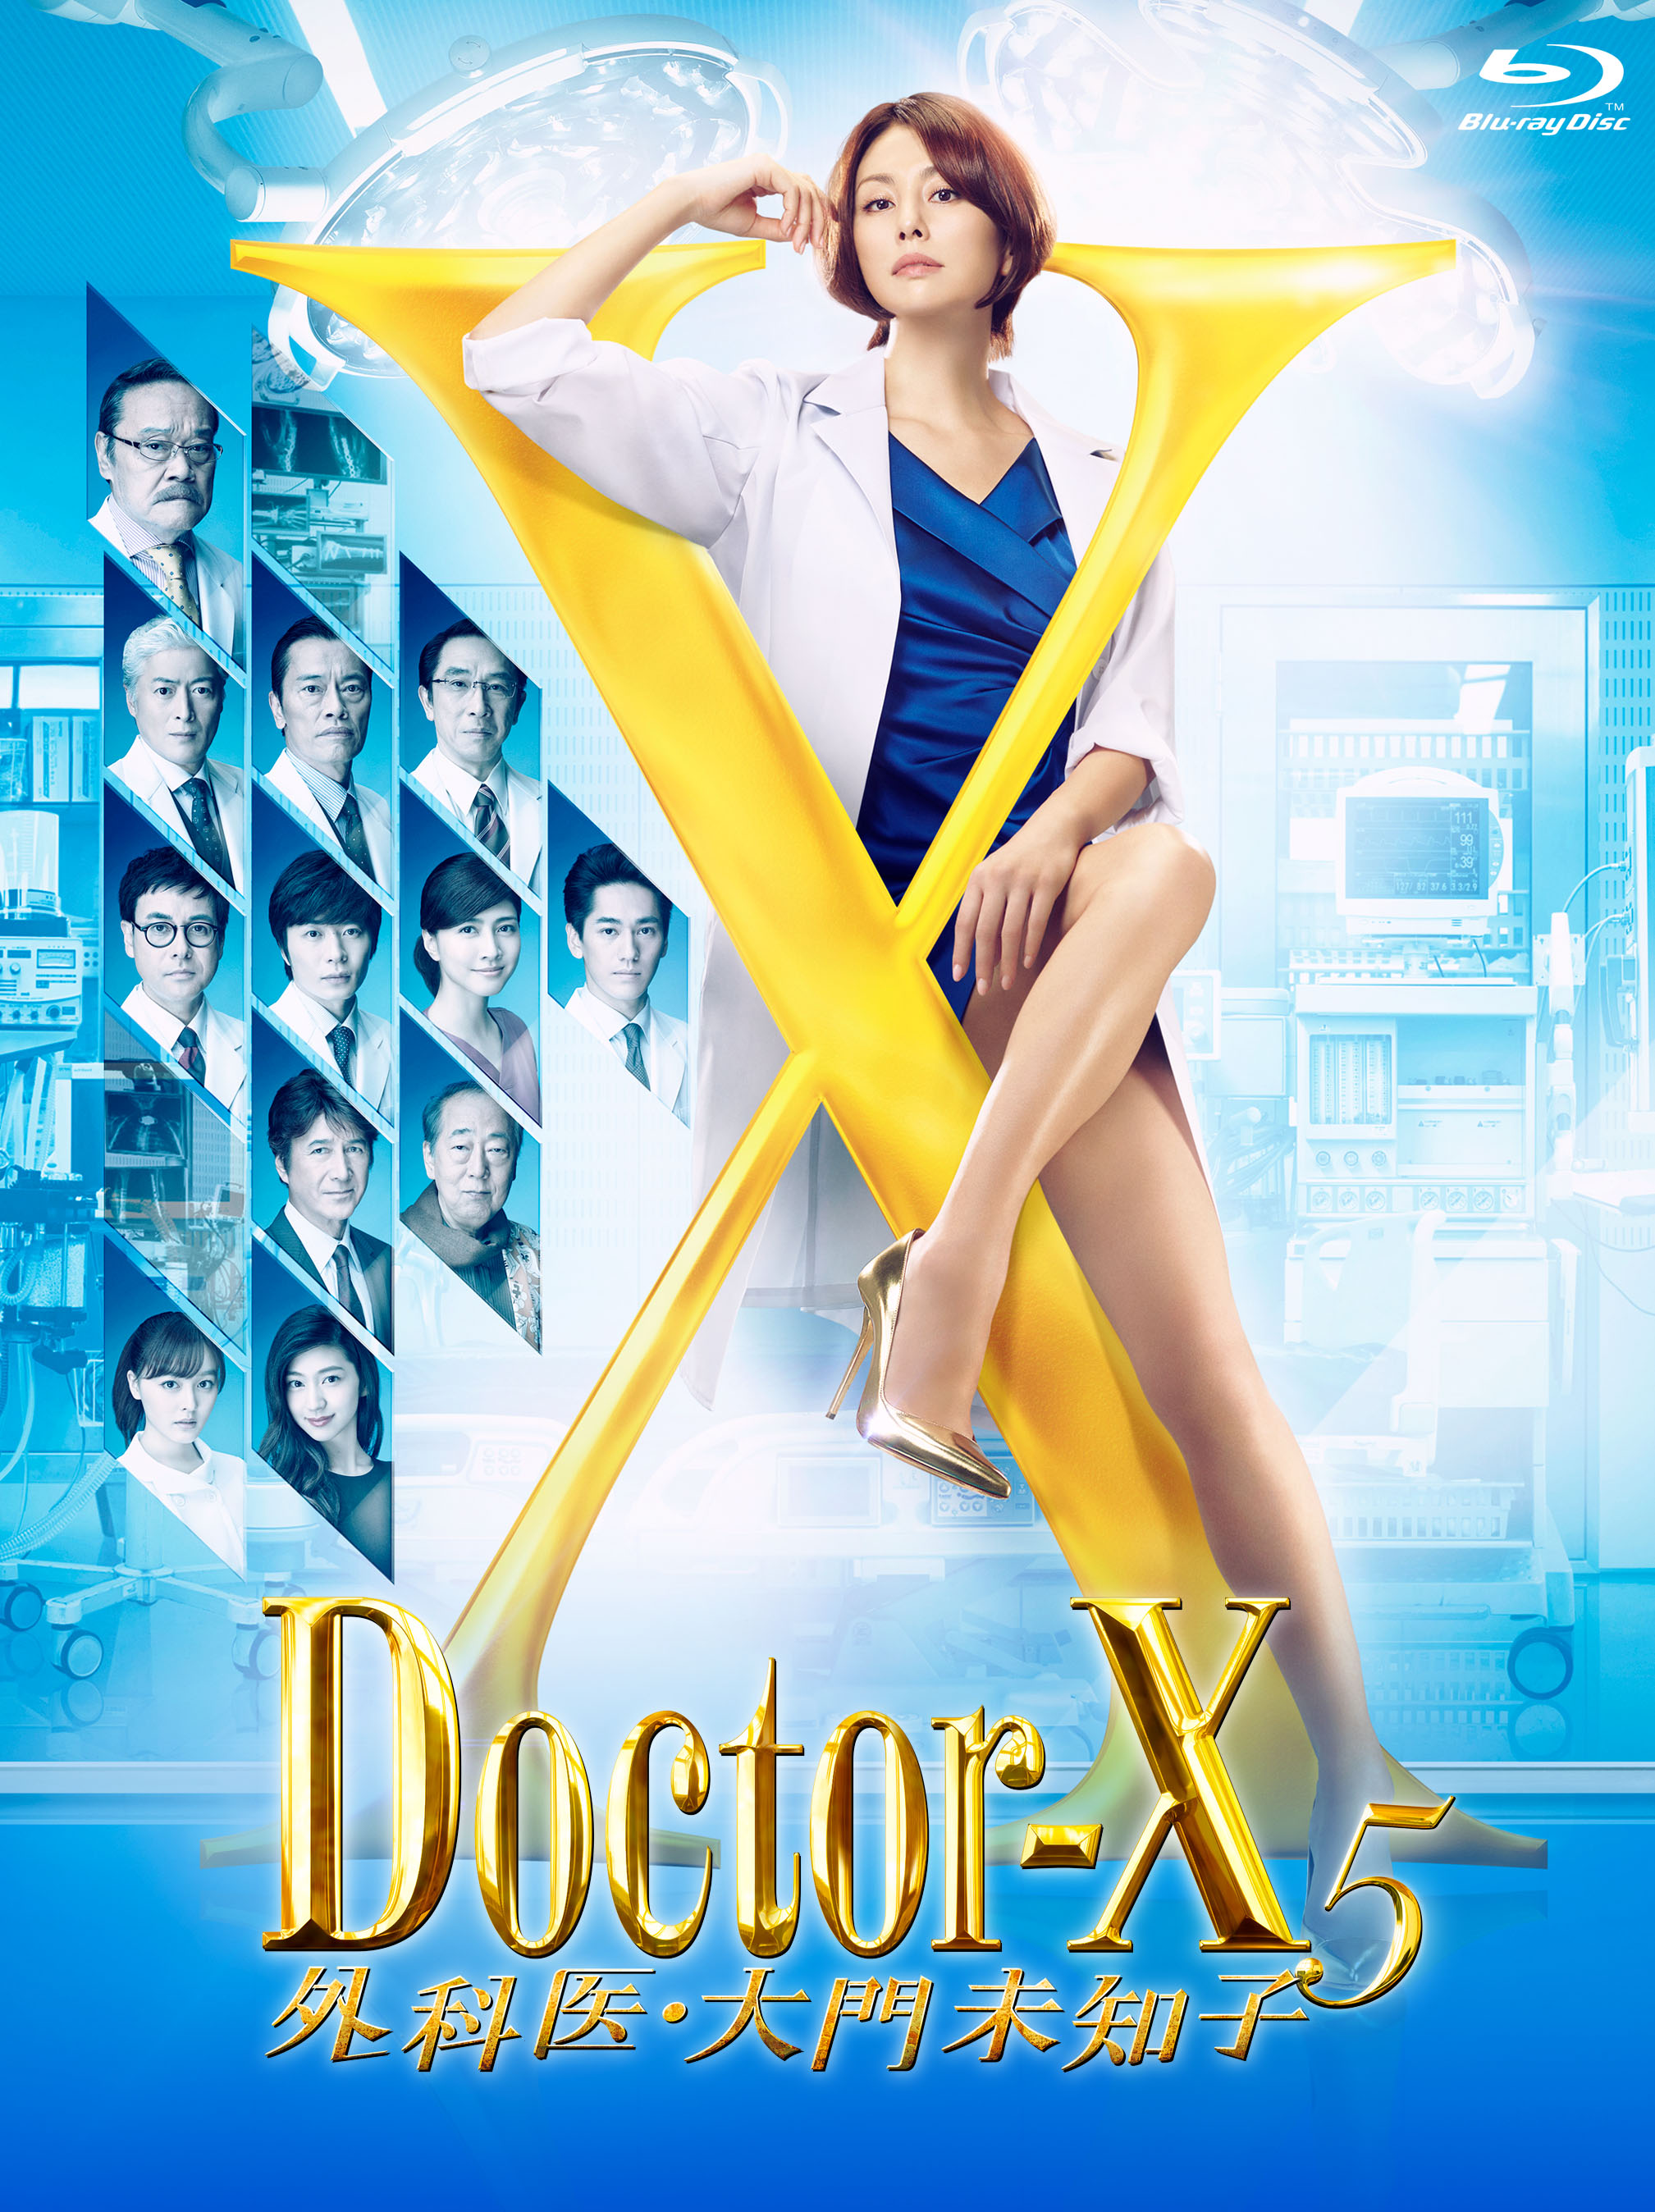 ドクターx 外科医 大門未知子 5 Blu Ray Dvd発売決定 予約購入者には卓上カレンダーも Real Sound リアルサウンド 映画部